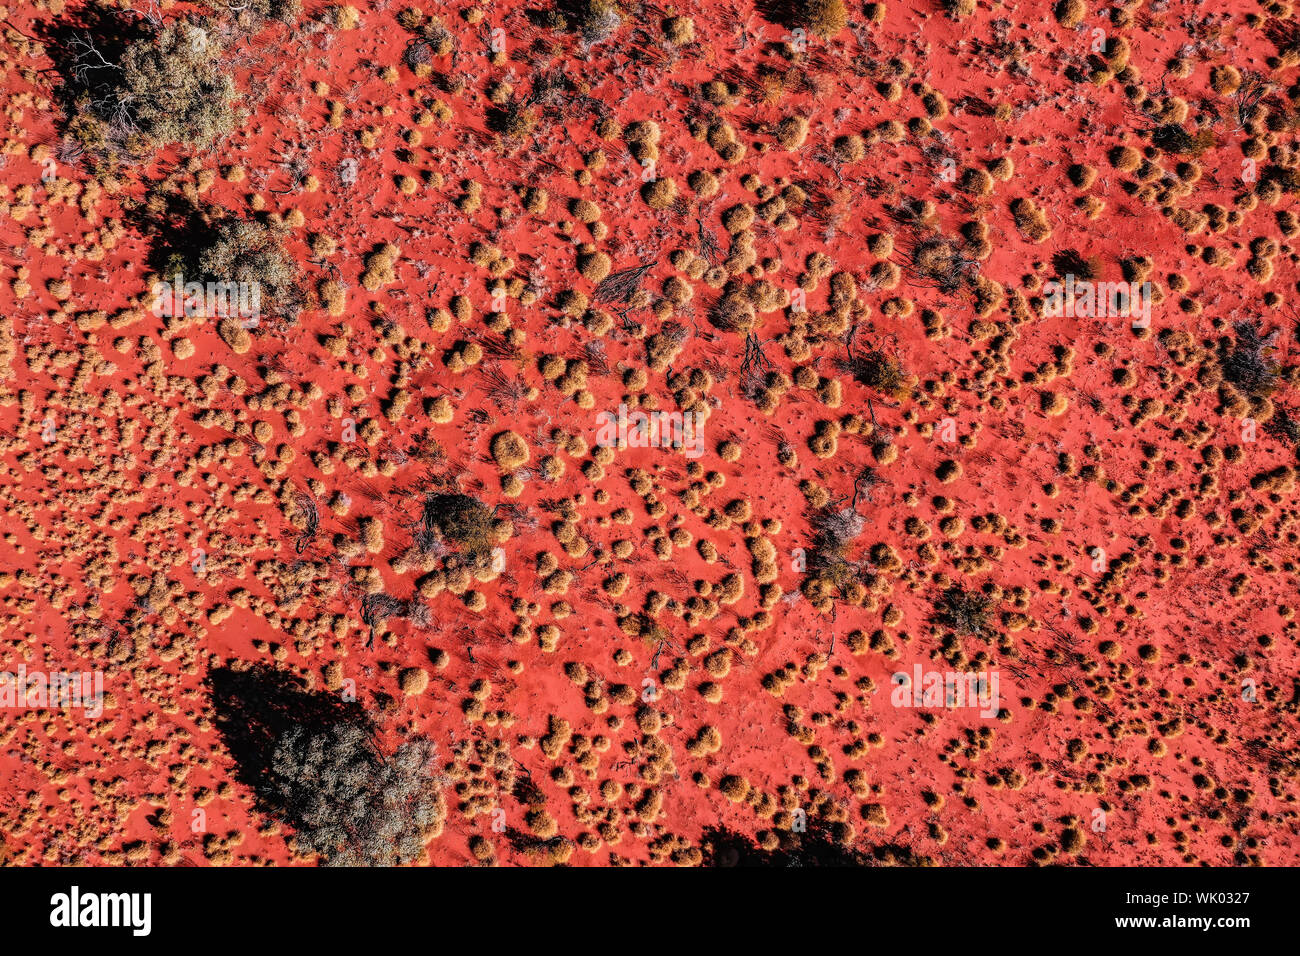 Terres arides vue aérienne du centre de l'Australie Banque D'Images